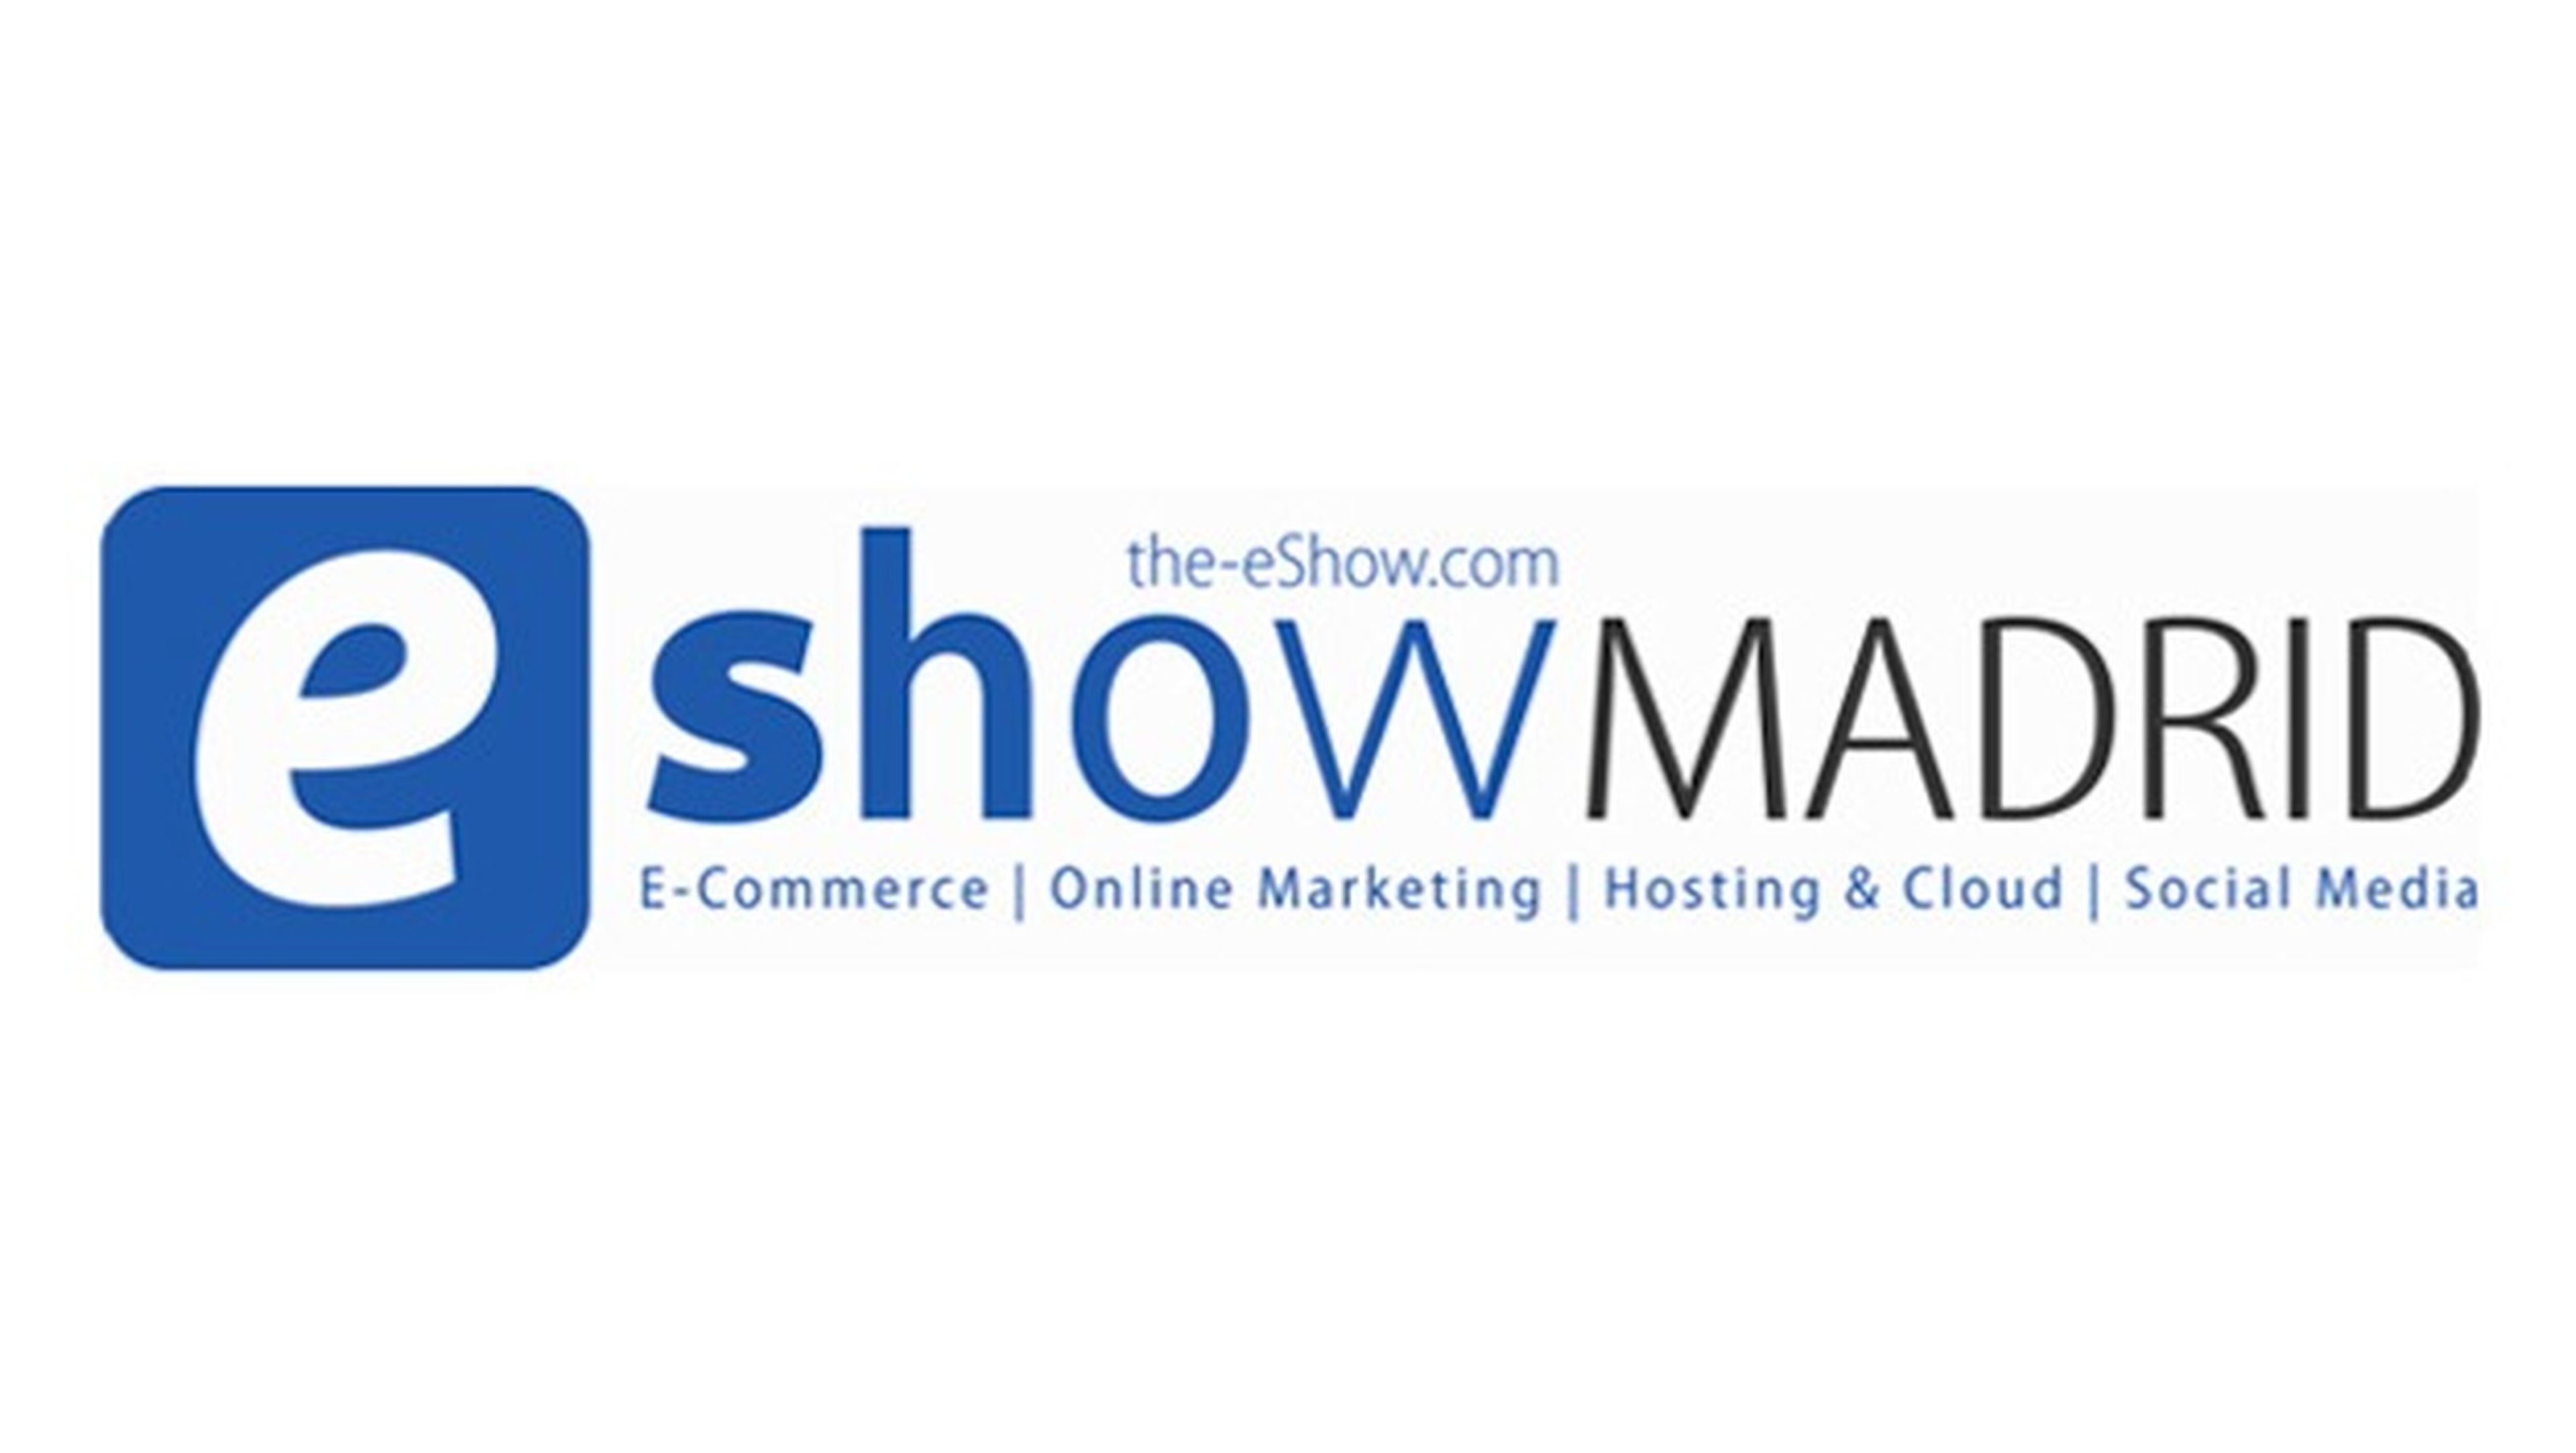 eShow tendrá lugar en Madrid del 30 de septiembre al 1 de octubre